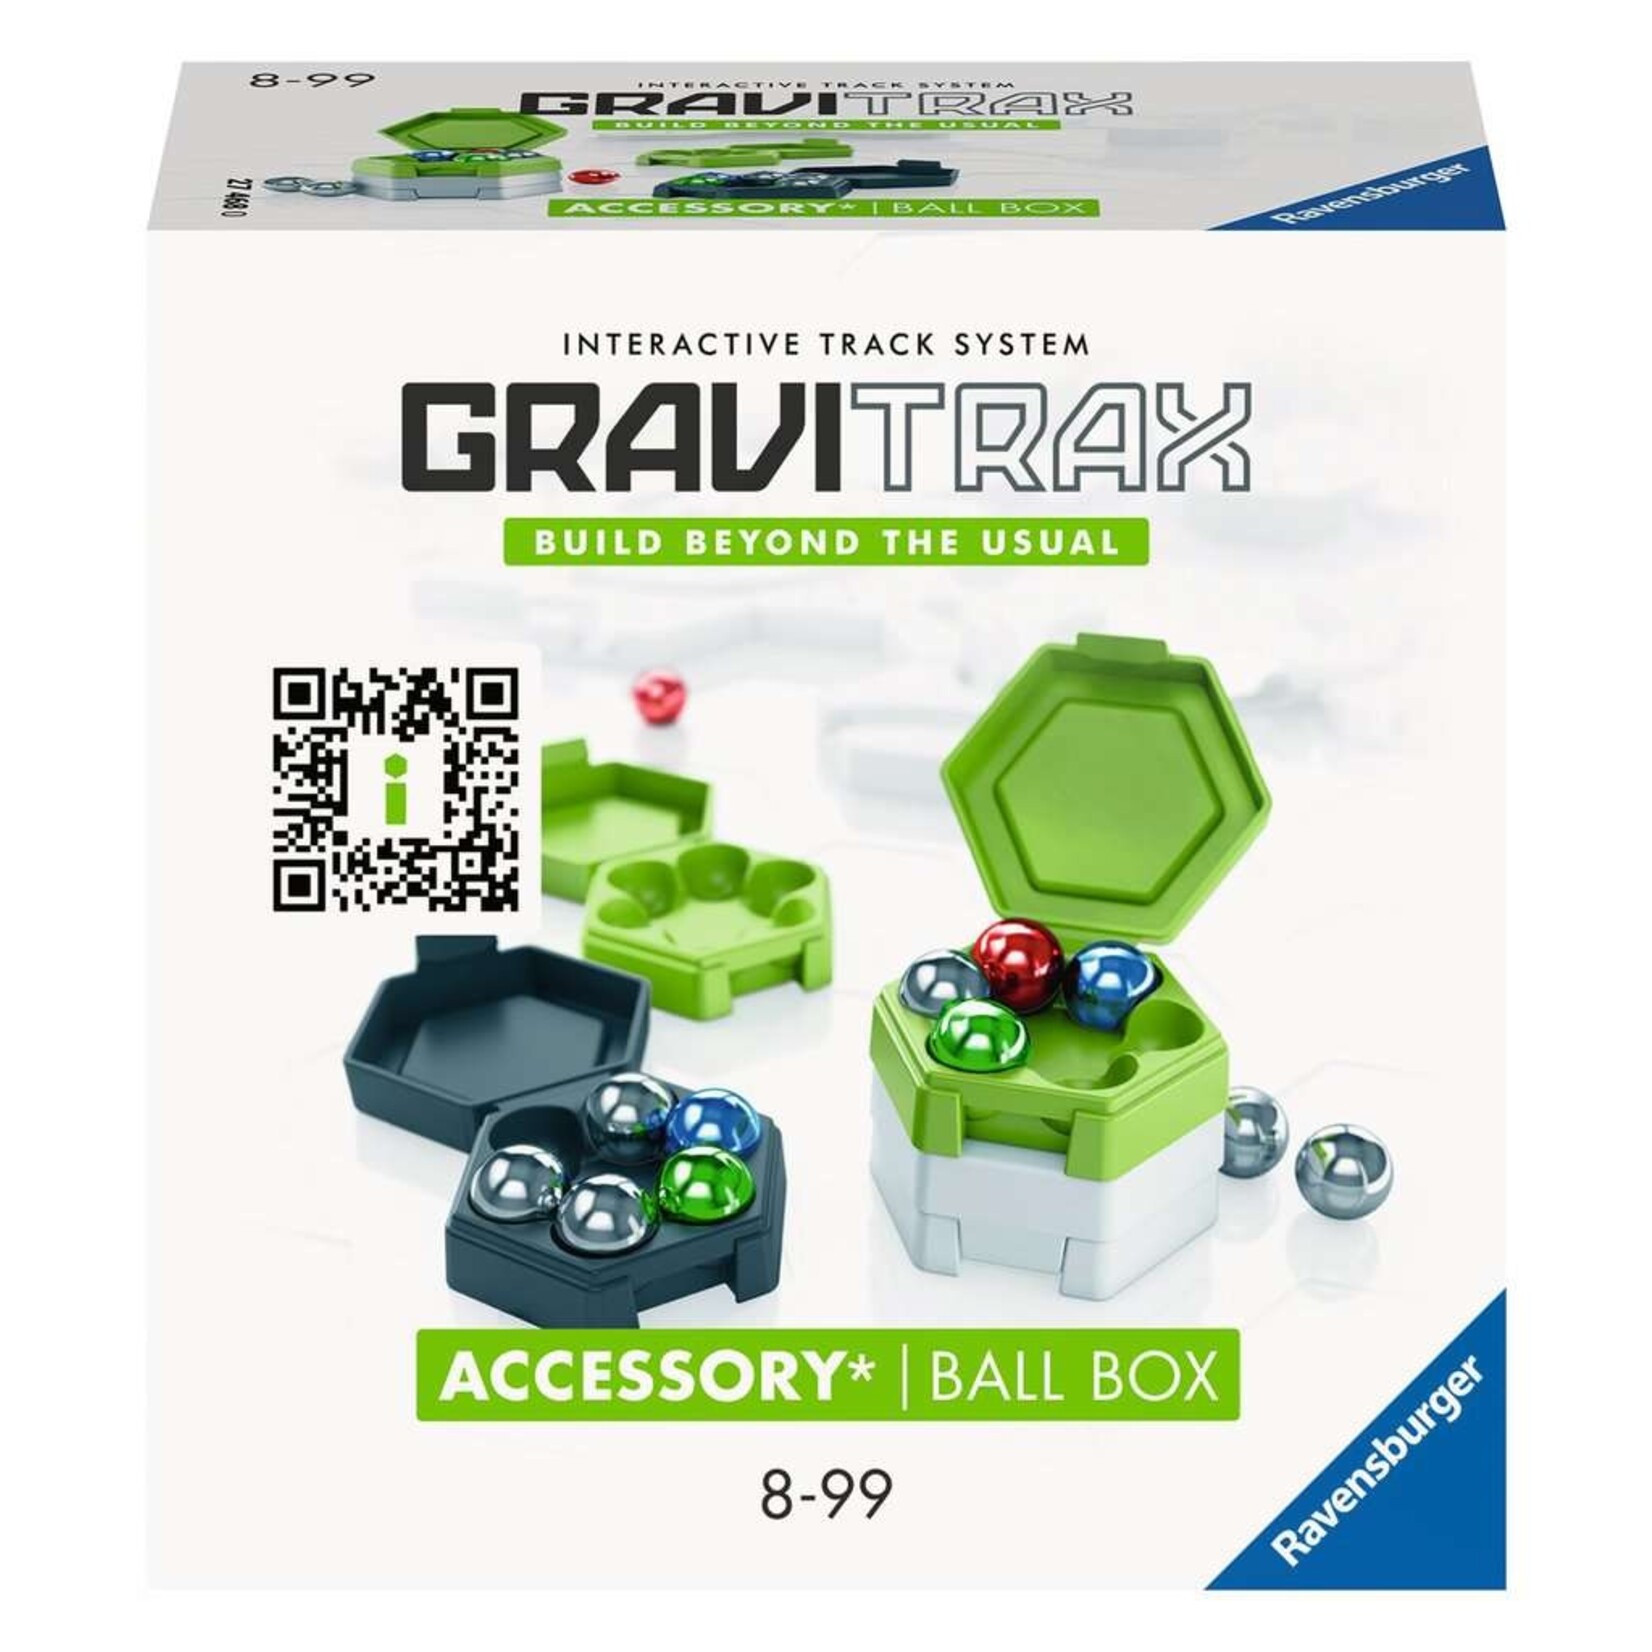 Gravitrax Accessory Box